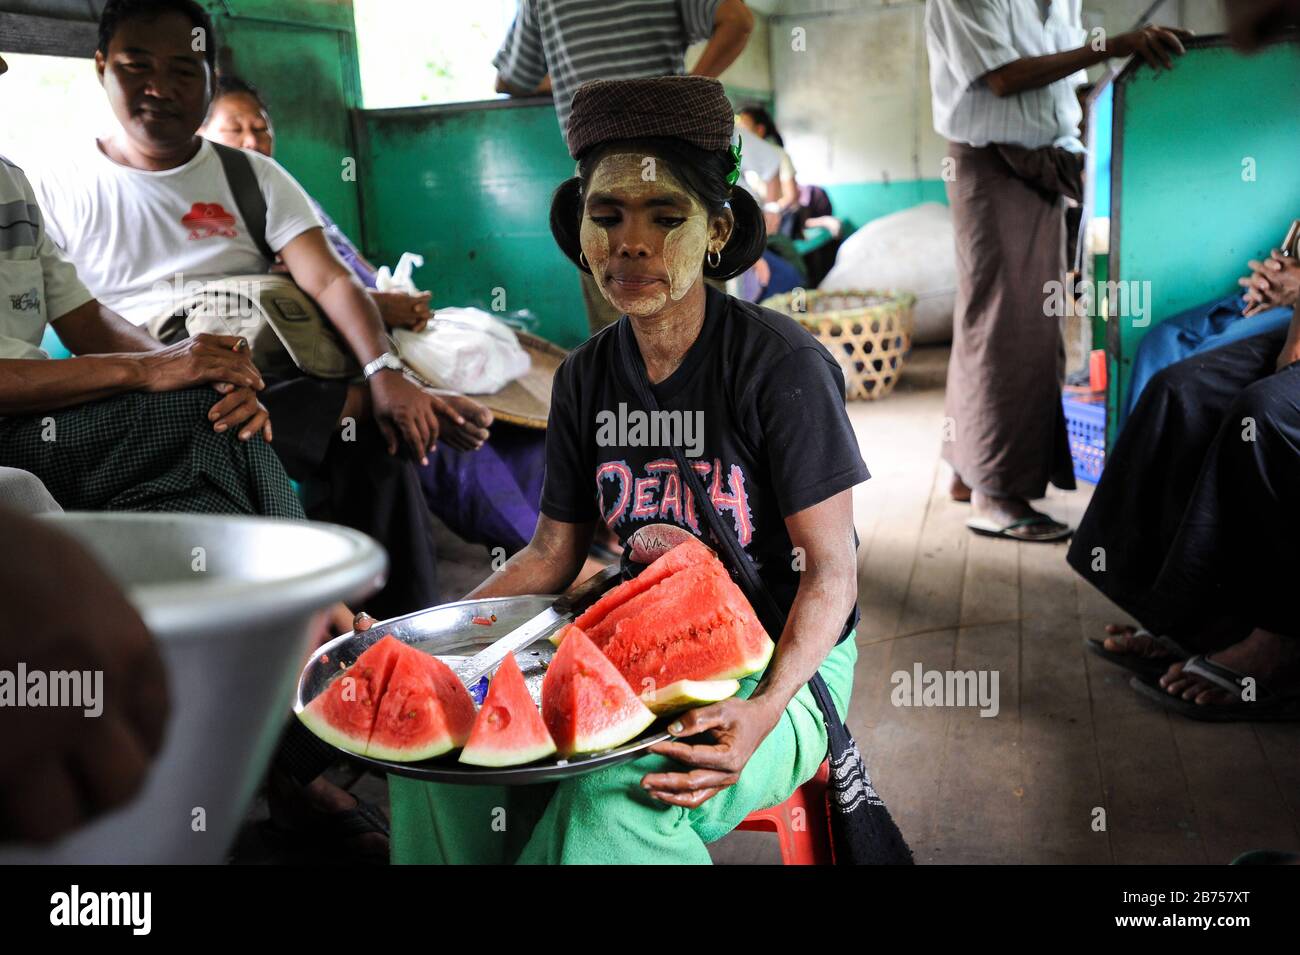 02.09.2013, Yangon, Republik der Union Myanmar, Asien - EINE Frau verkauft frische Wassermelonenscheiben in einem Zugfach der Ringbahn. Ihr Gesicht ist mit der typischen Thanaka-Paste verschmiert. Das lokale Vorortbahnnetz bedient den Großraum Yangon und wird von der Myanmar Railways betrieben. [Automatisierte Übersetzung] Stockfoto